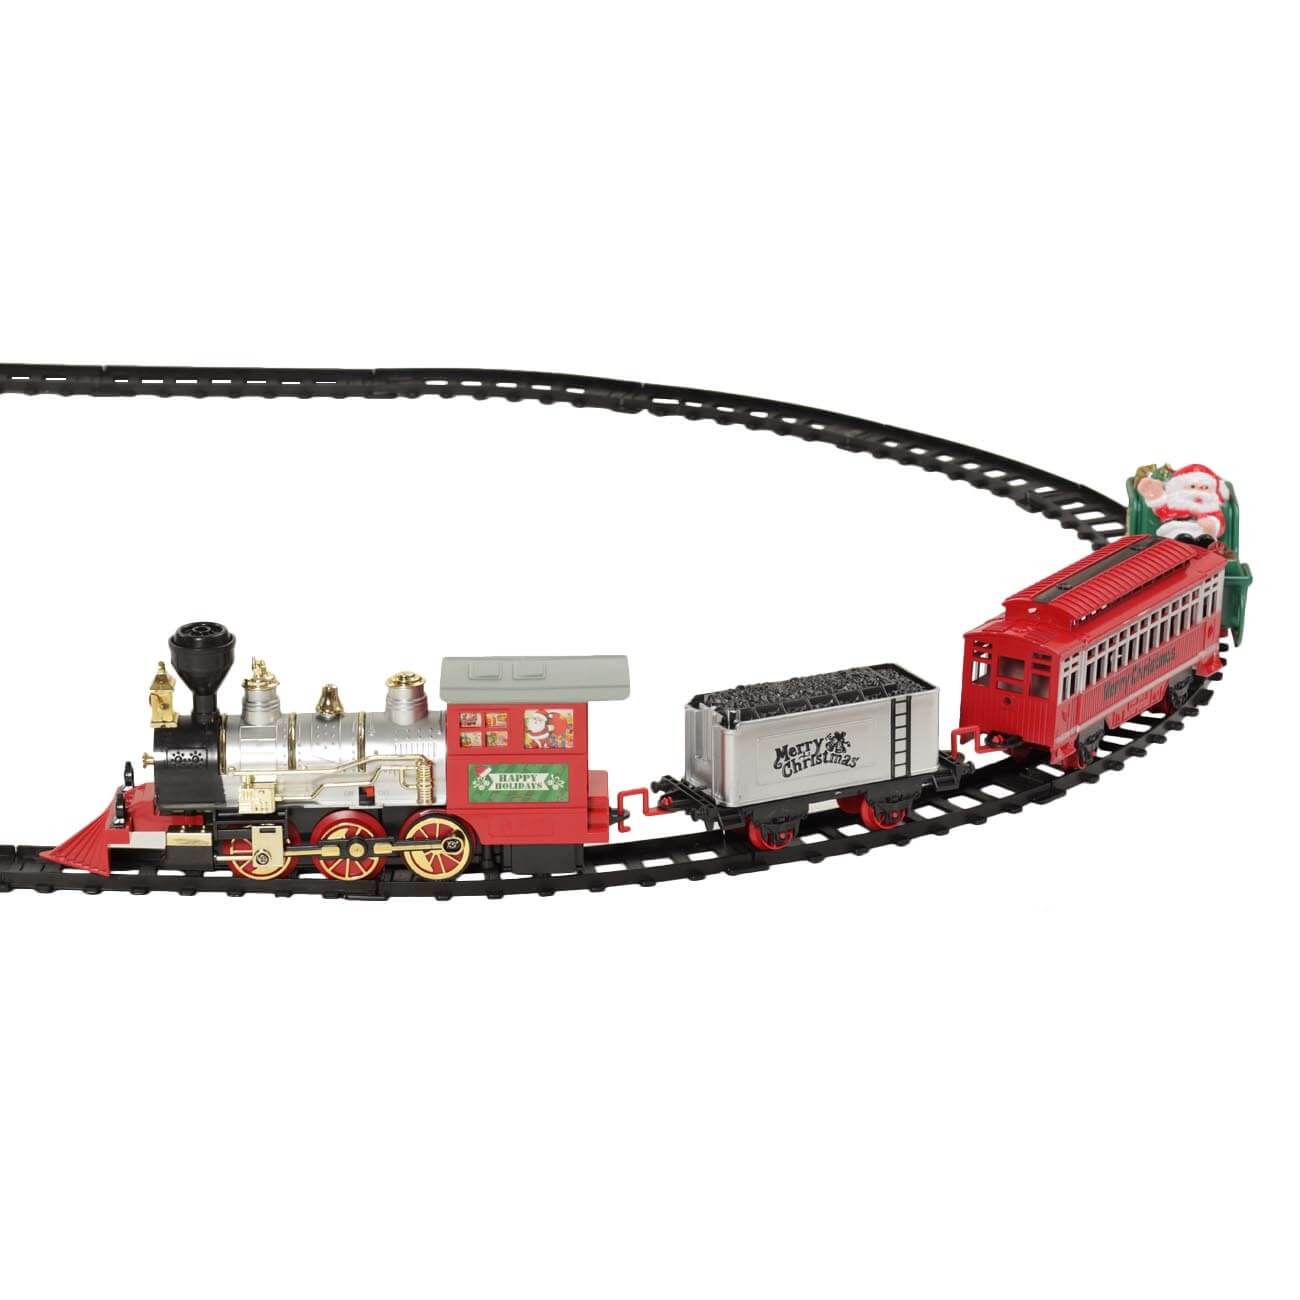 Железная дорога игрушечная, S, музыкальная, с подсветкой/дымом, пластик, Game rail музыкальная семантика